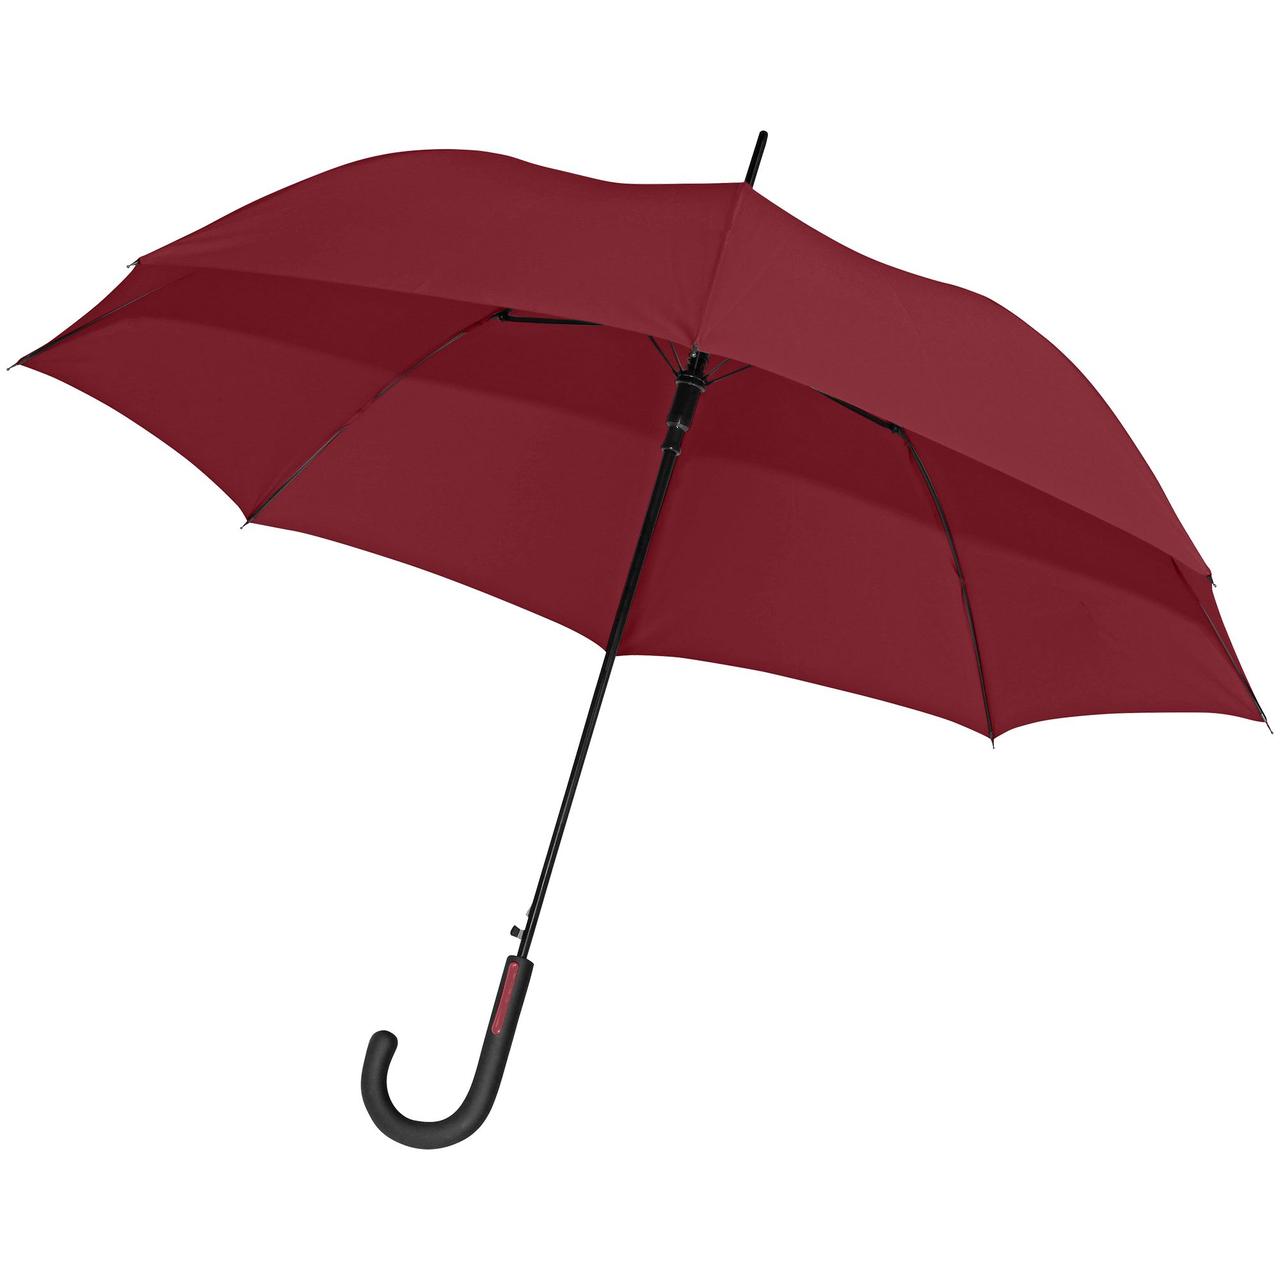 Зонт-трость Glasgow, бордовый (артикул 11846.55)